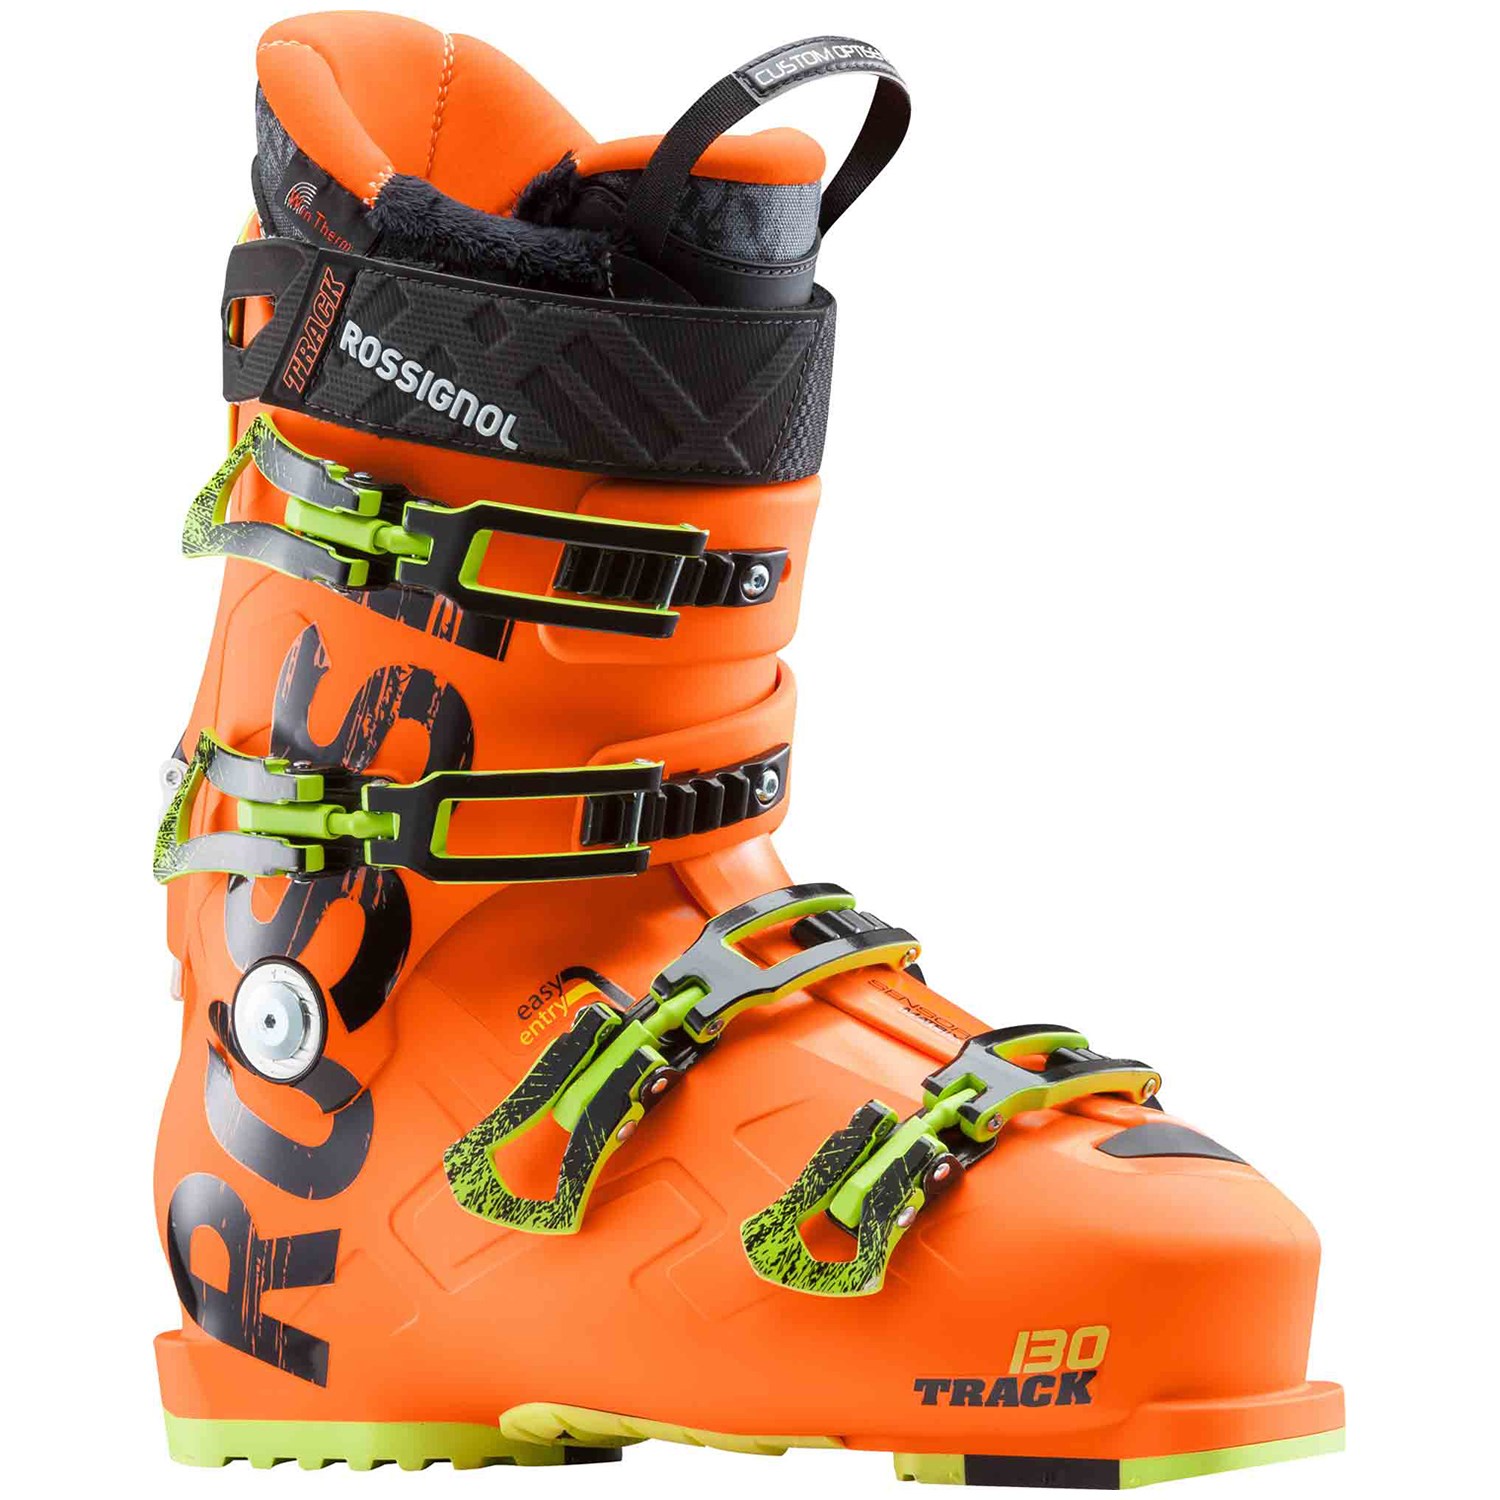 Rossignol Track 130 Ski Boots 2019 | evo